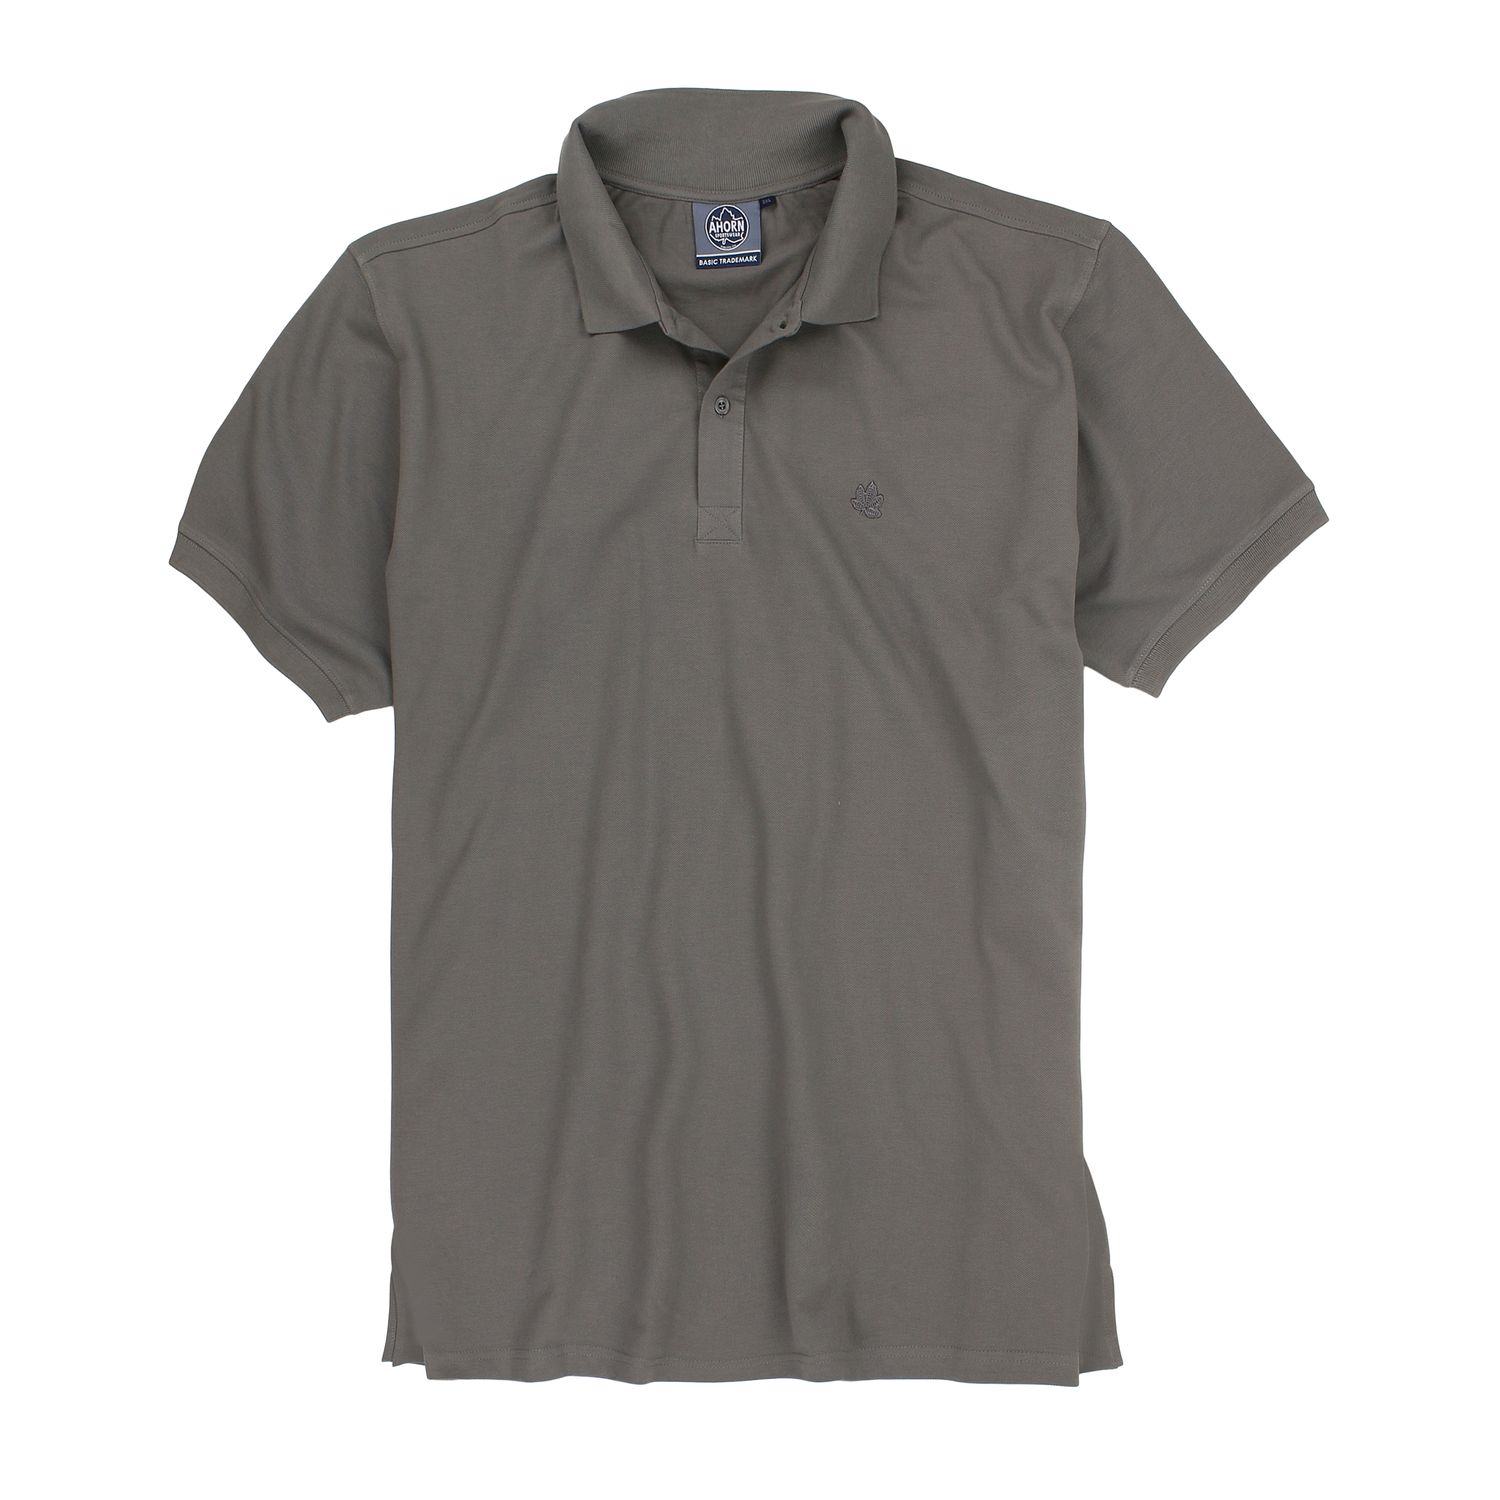 Pique Poloshirt in großen Größen bis 10XL für Herren kurzarm stahlgrau von Ahorn Sportswear